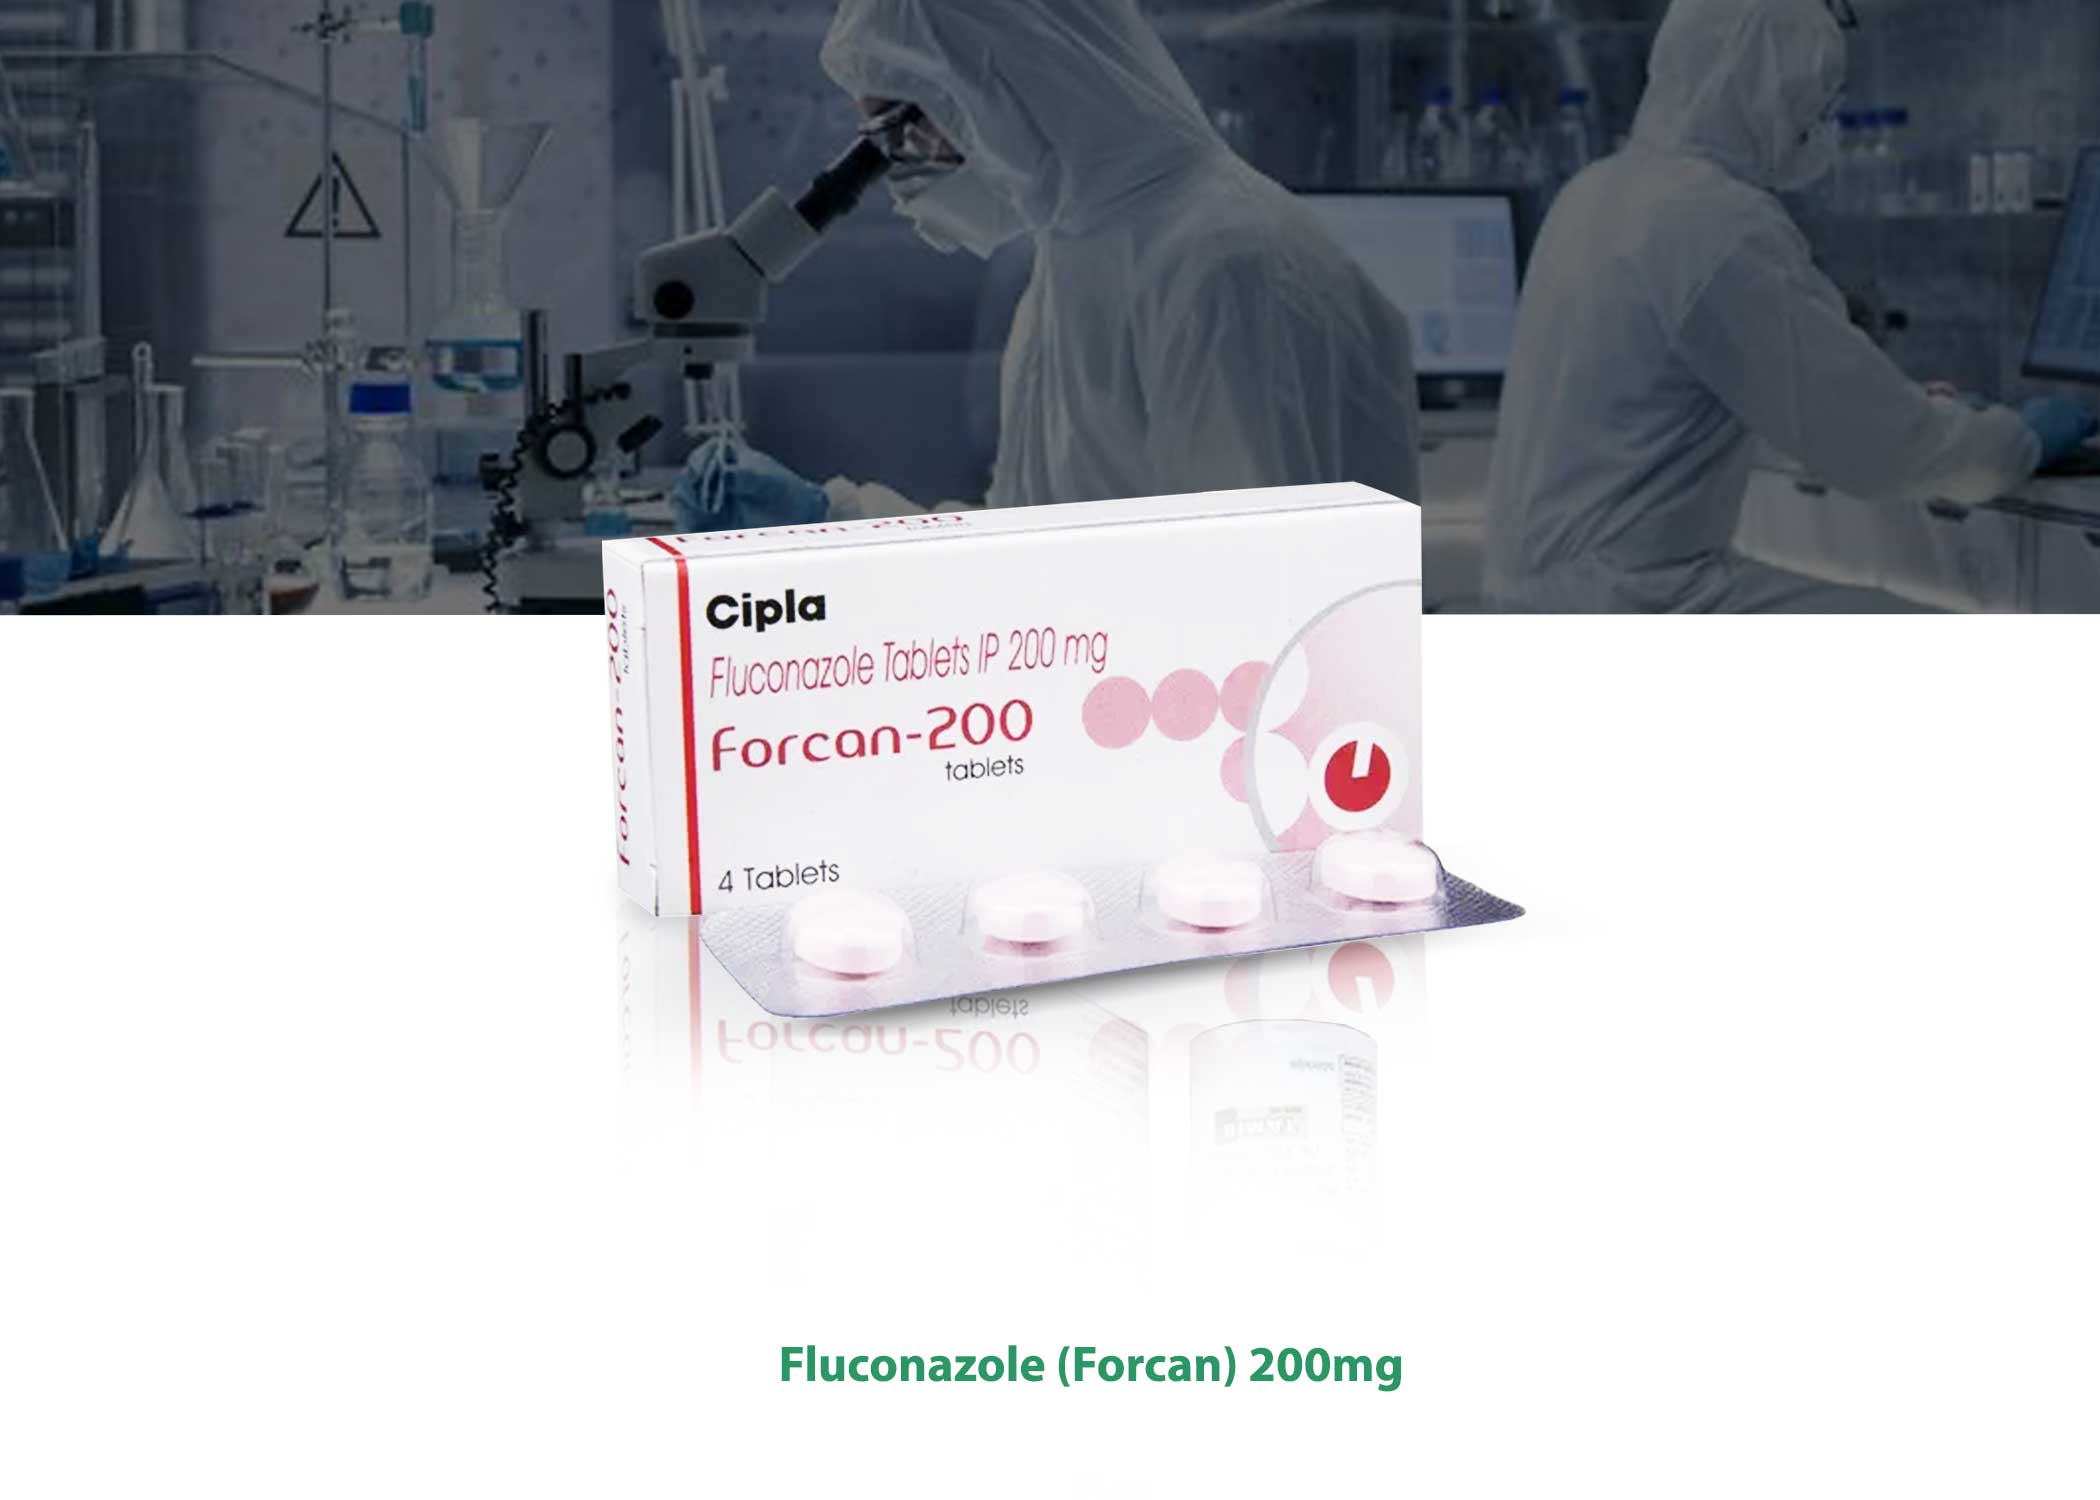 Fluconazole Forcan 200mg